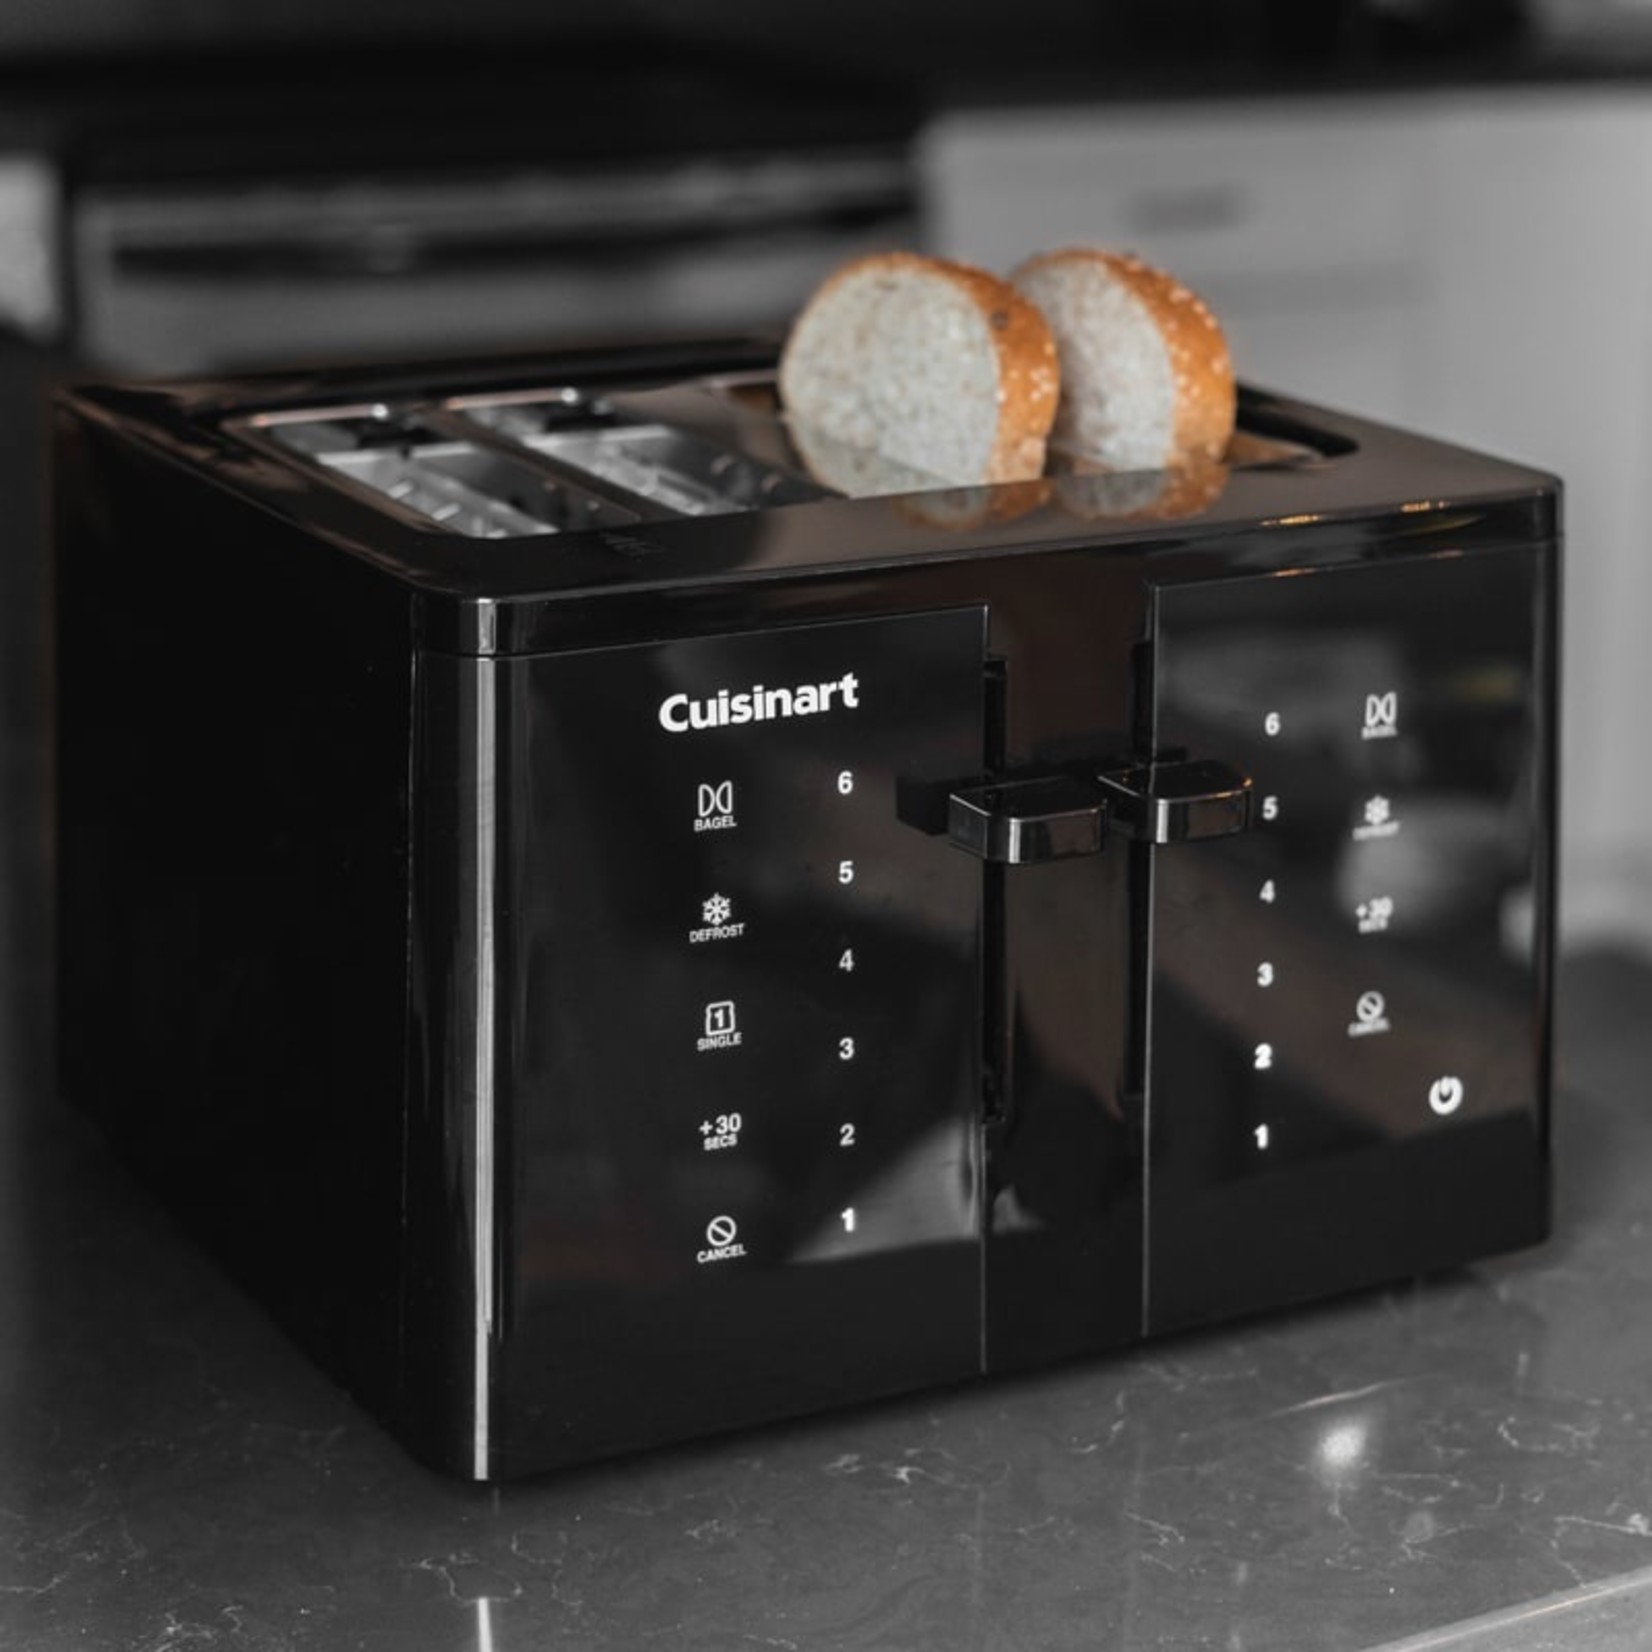 CUISINART CUISINART Touchscreen Toaster 4 Slice DNR